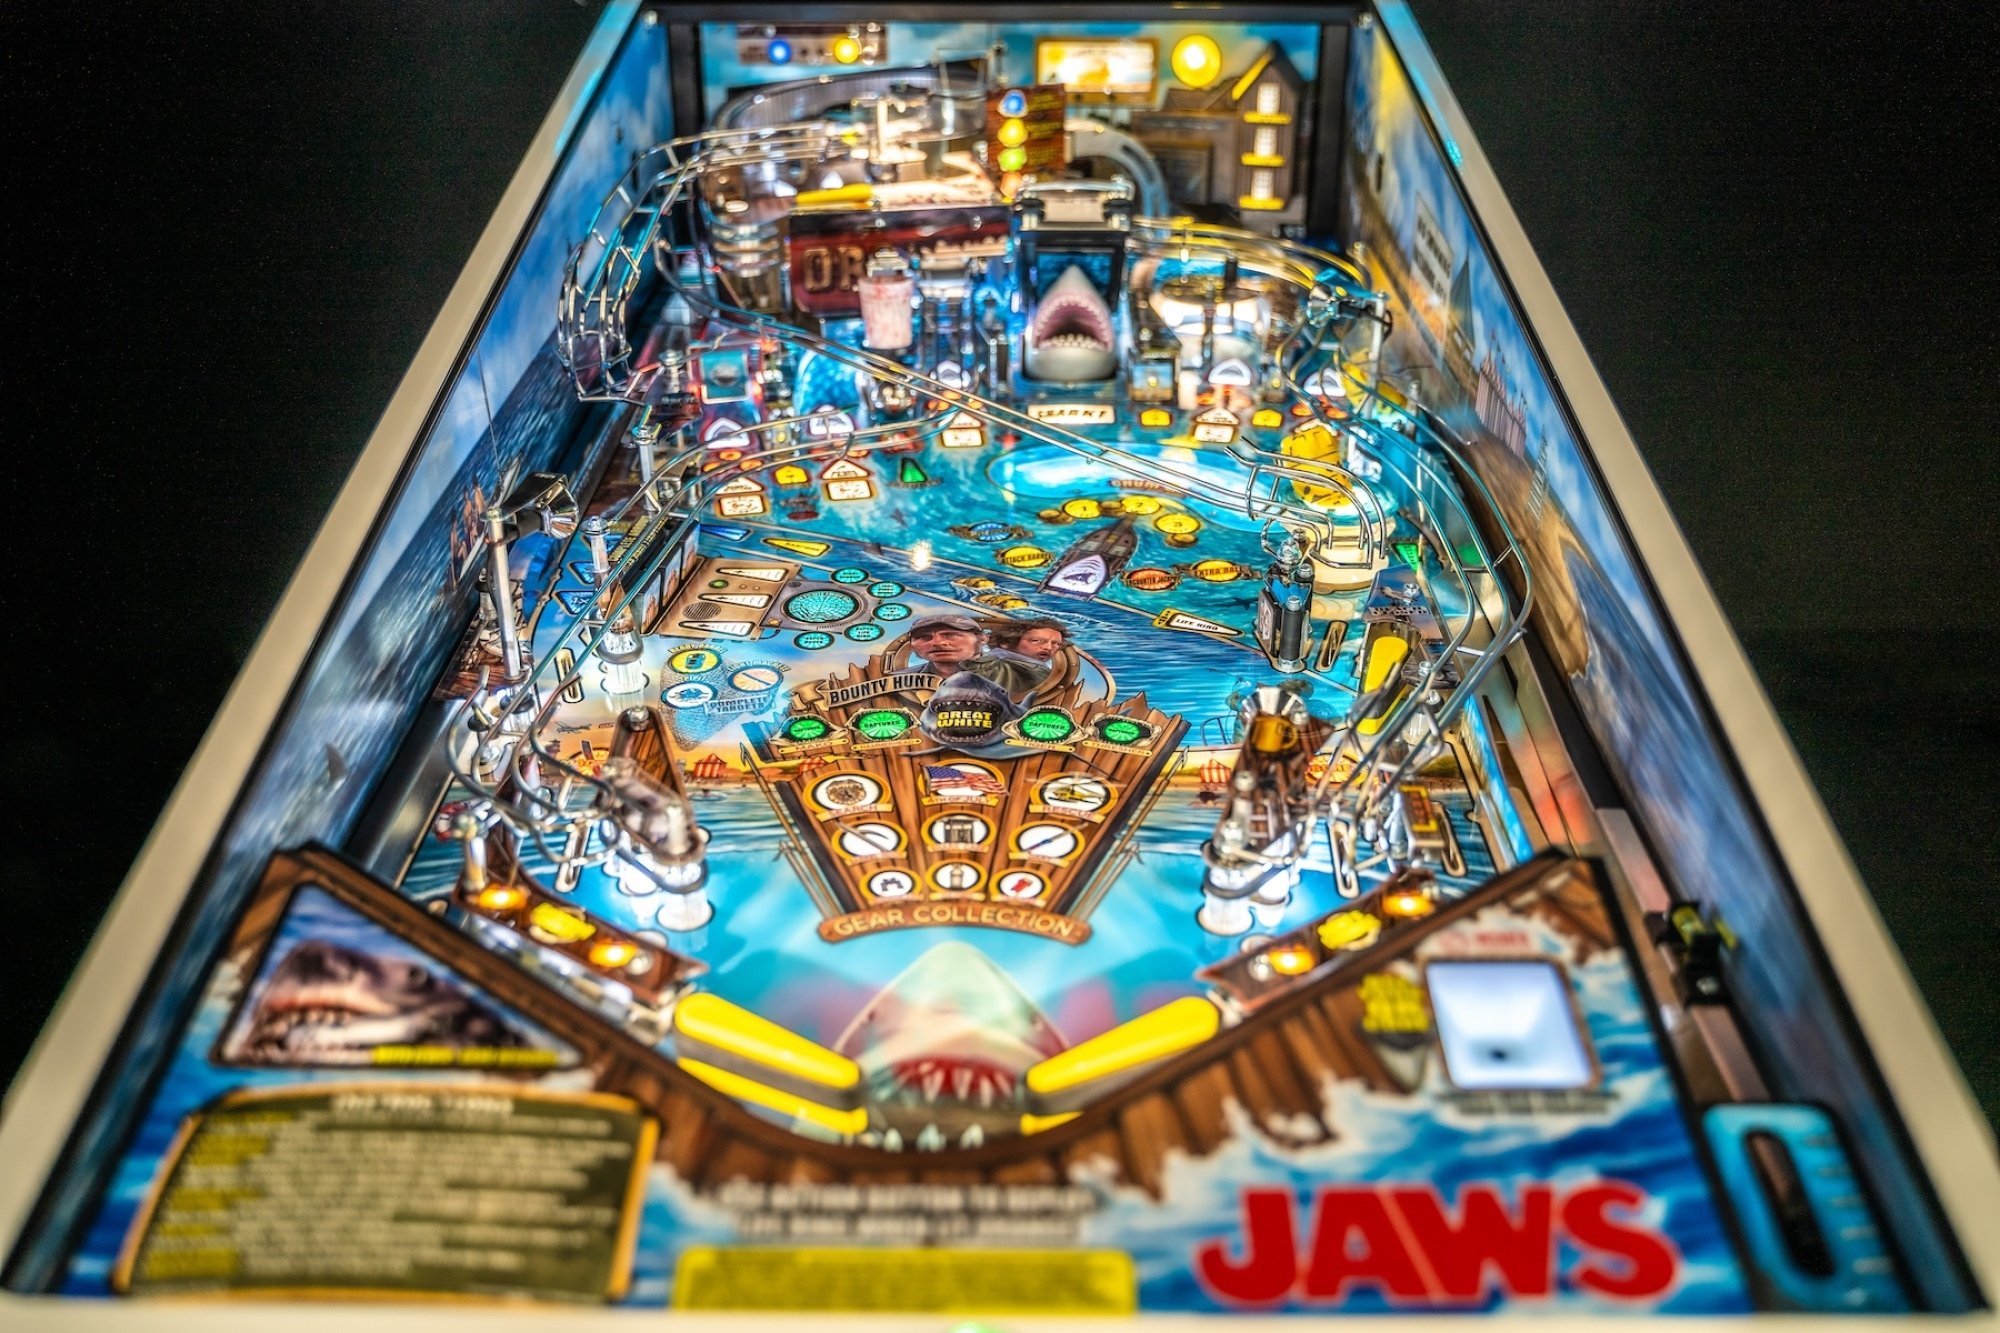 Jaws pinball table